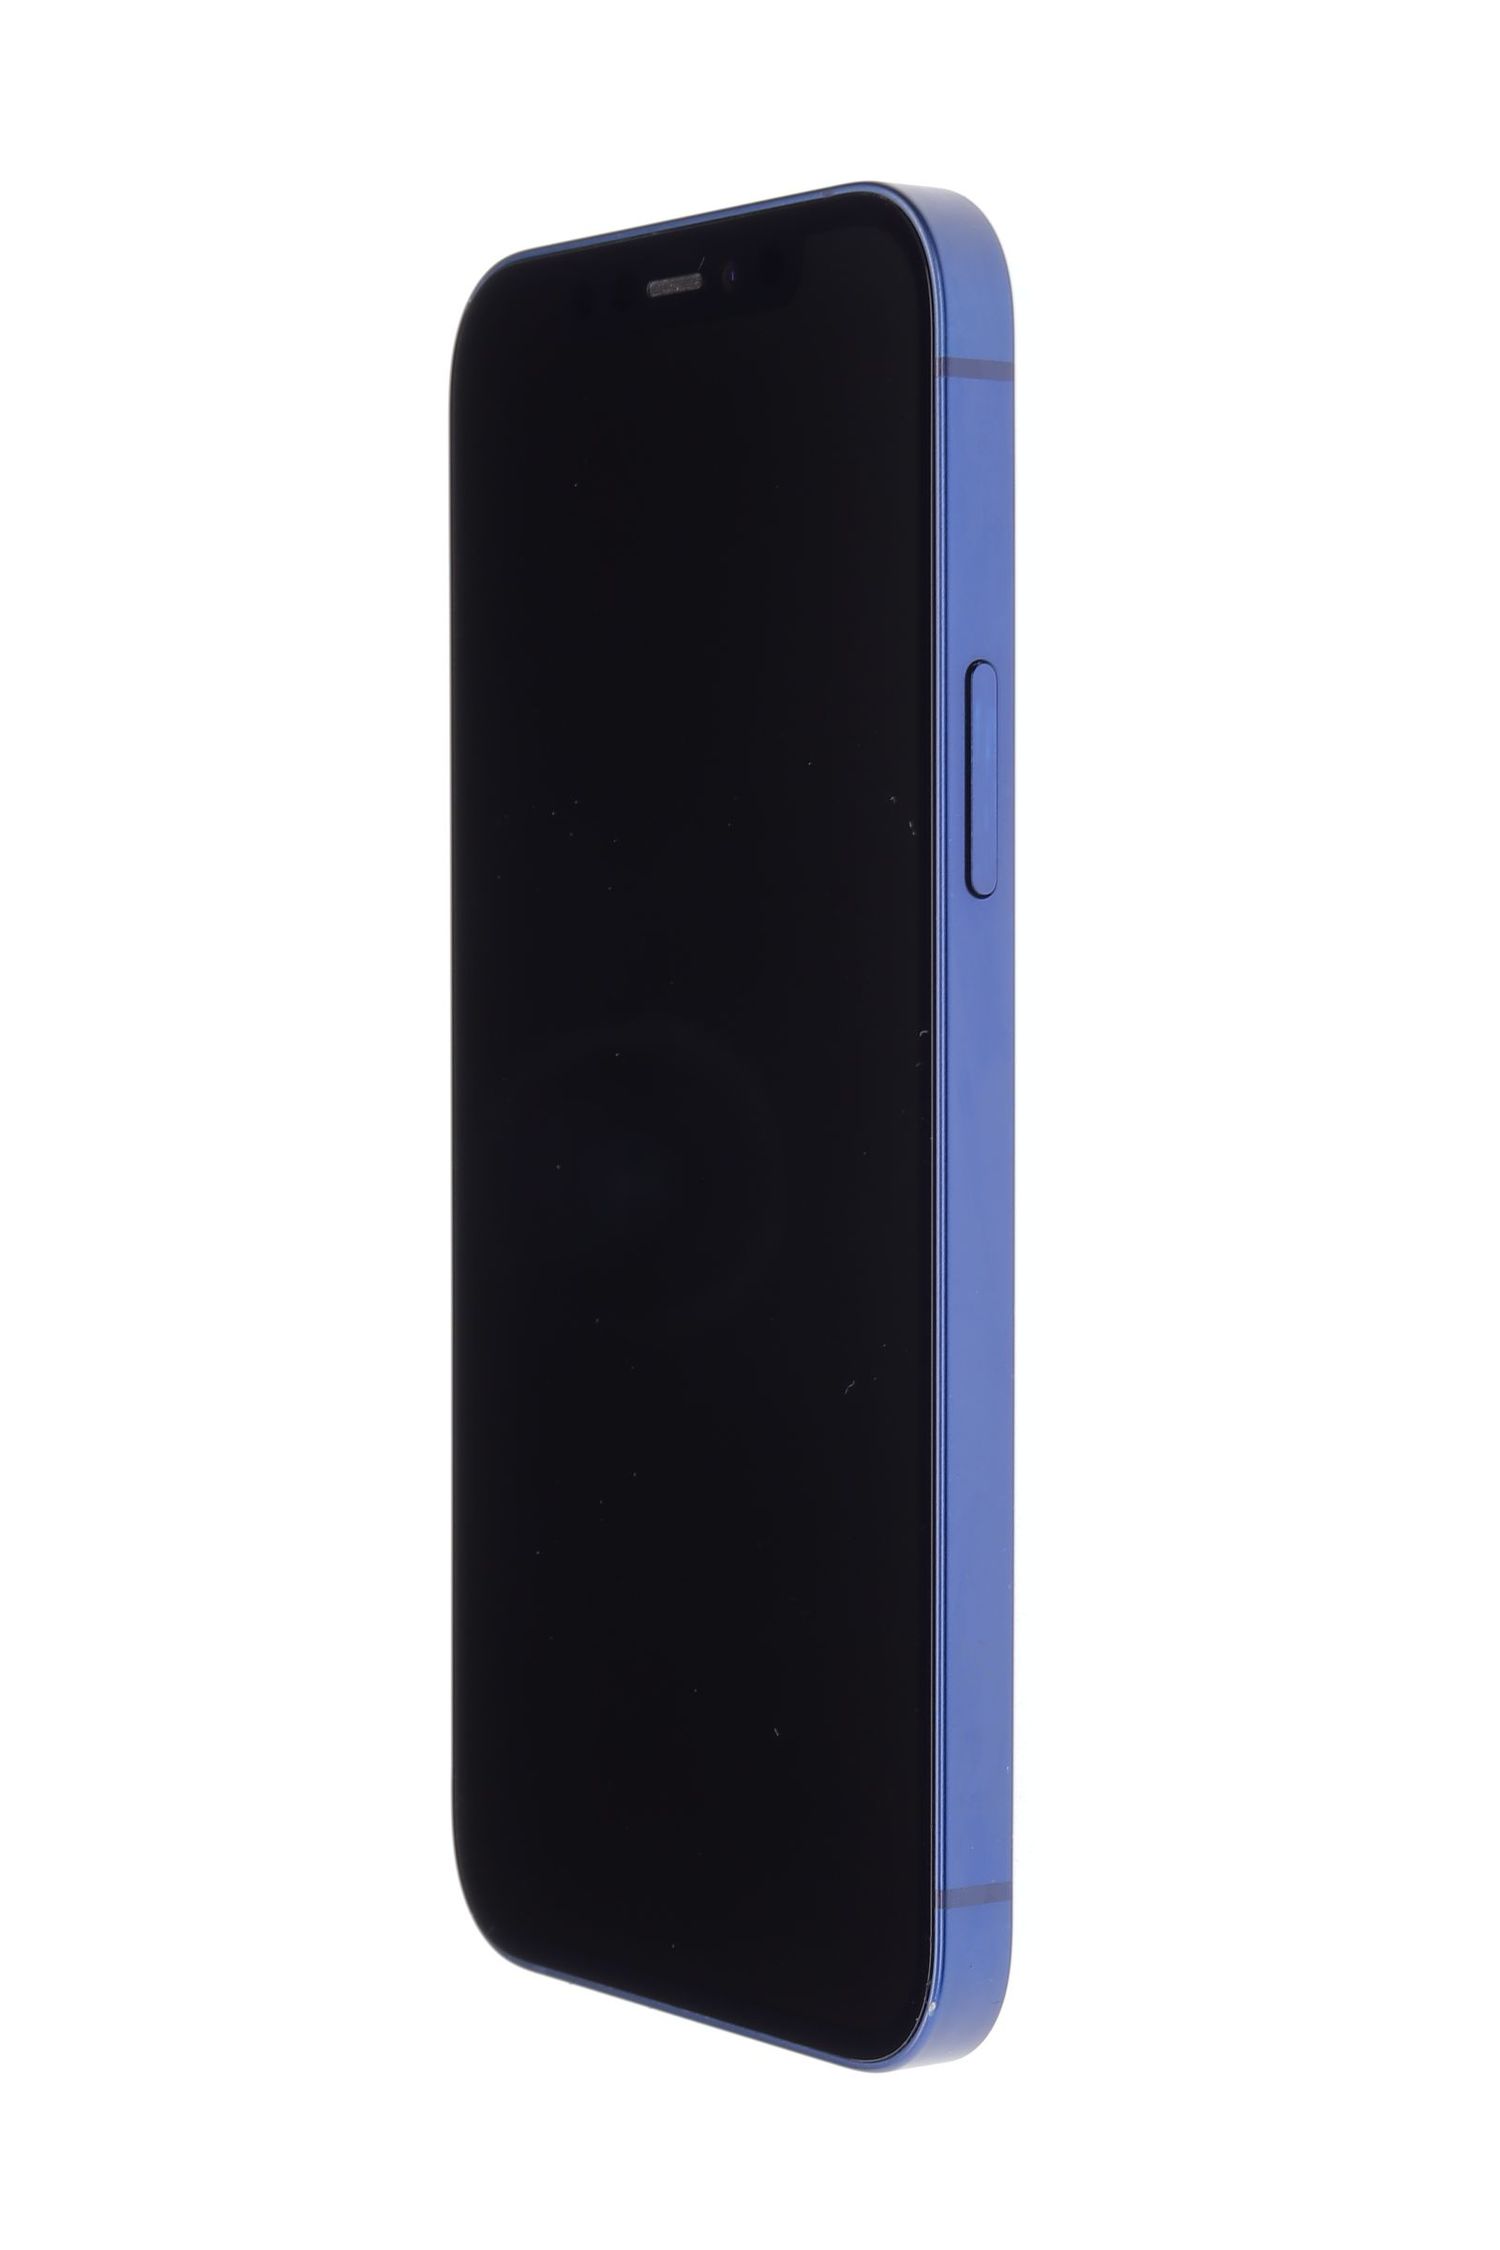 Κινητό τηλέφωνο Apple iPhone 12, Blue, 256 GB, Excelent